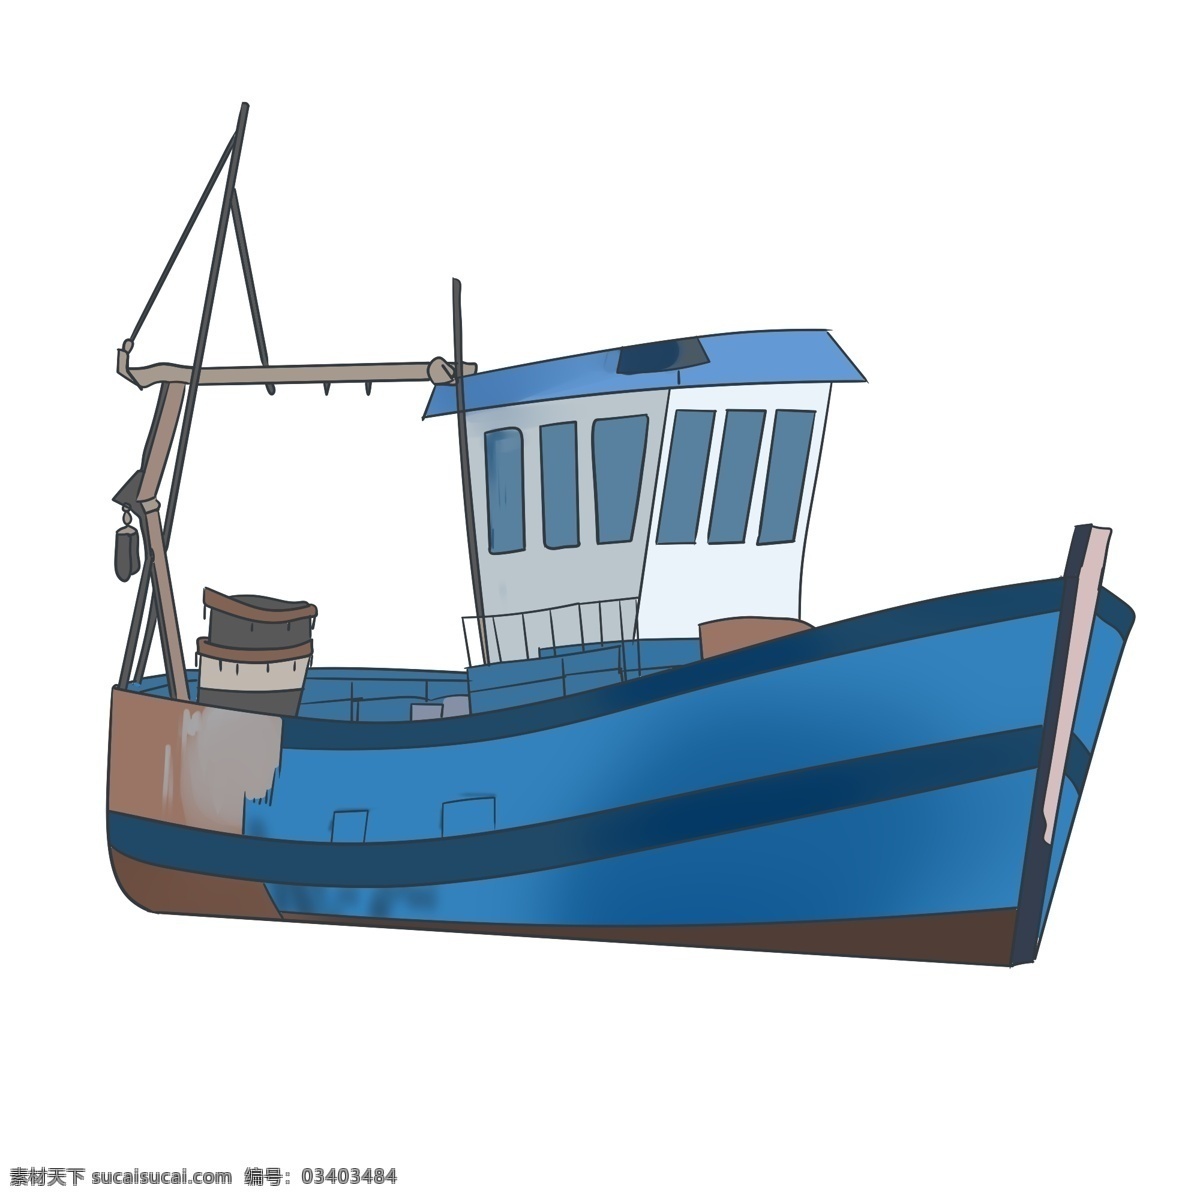 蓝色 轮船 装饰 插画 蓝色的轮船 漂亮的轮船 轮船装饰 轮船插画 立体轮船 海上轮船 运输轮船